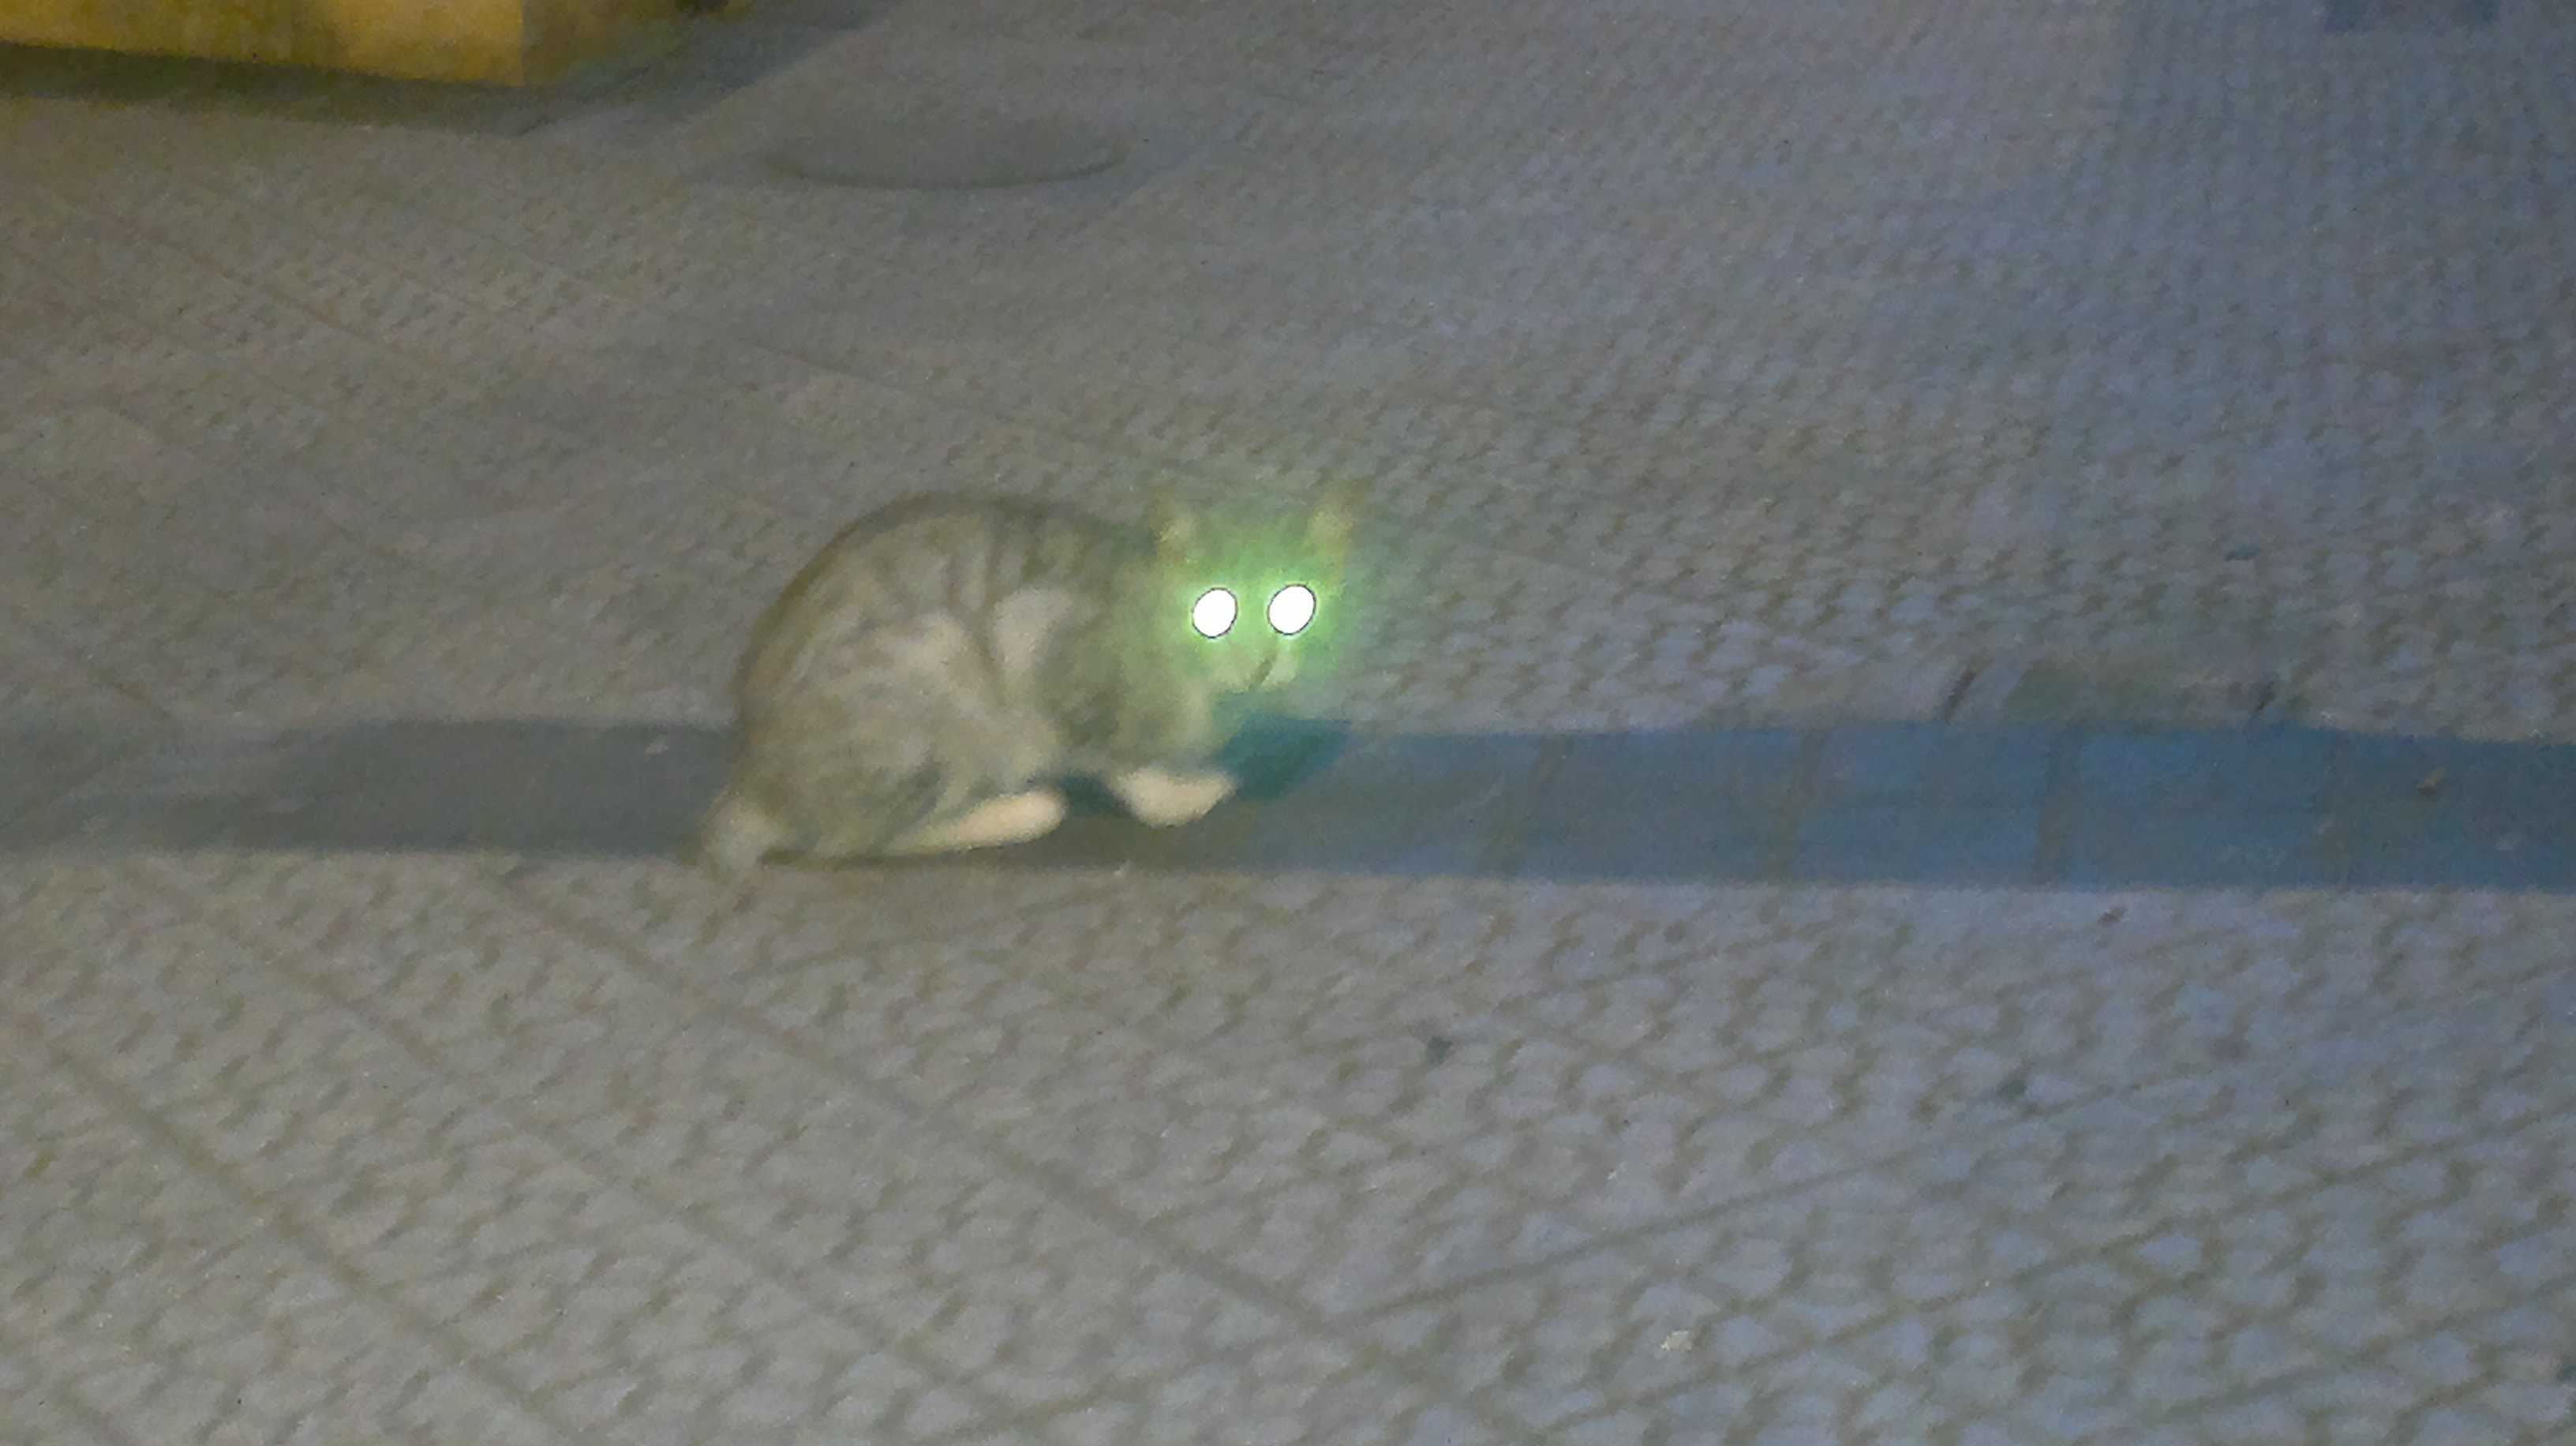 Gato encontrado (?) en Bilbao 2012-08-10-347